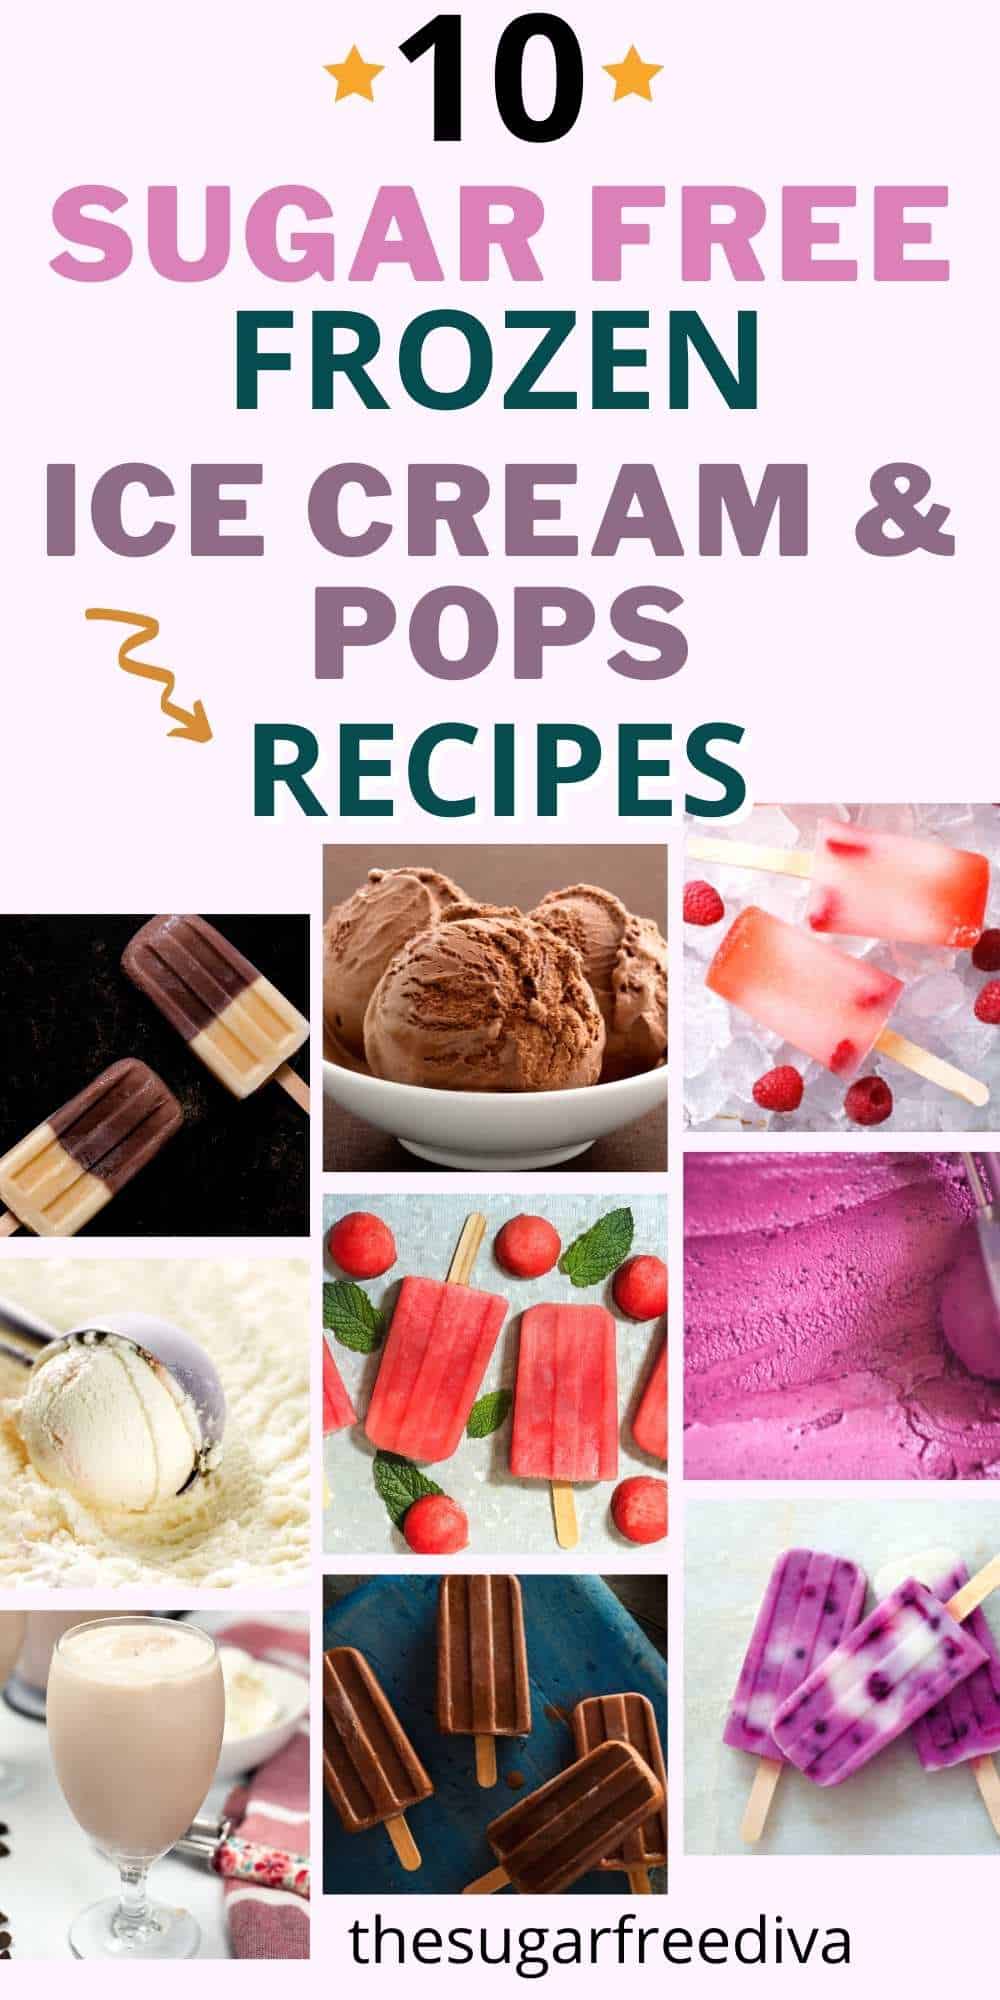 10 recetas de helados y paletas helados sin azúcar